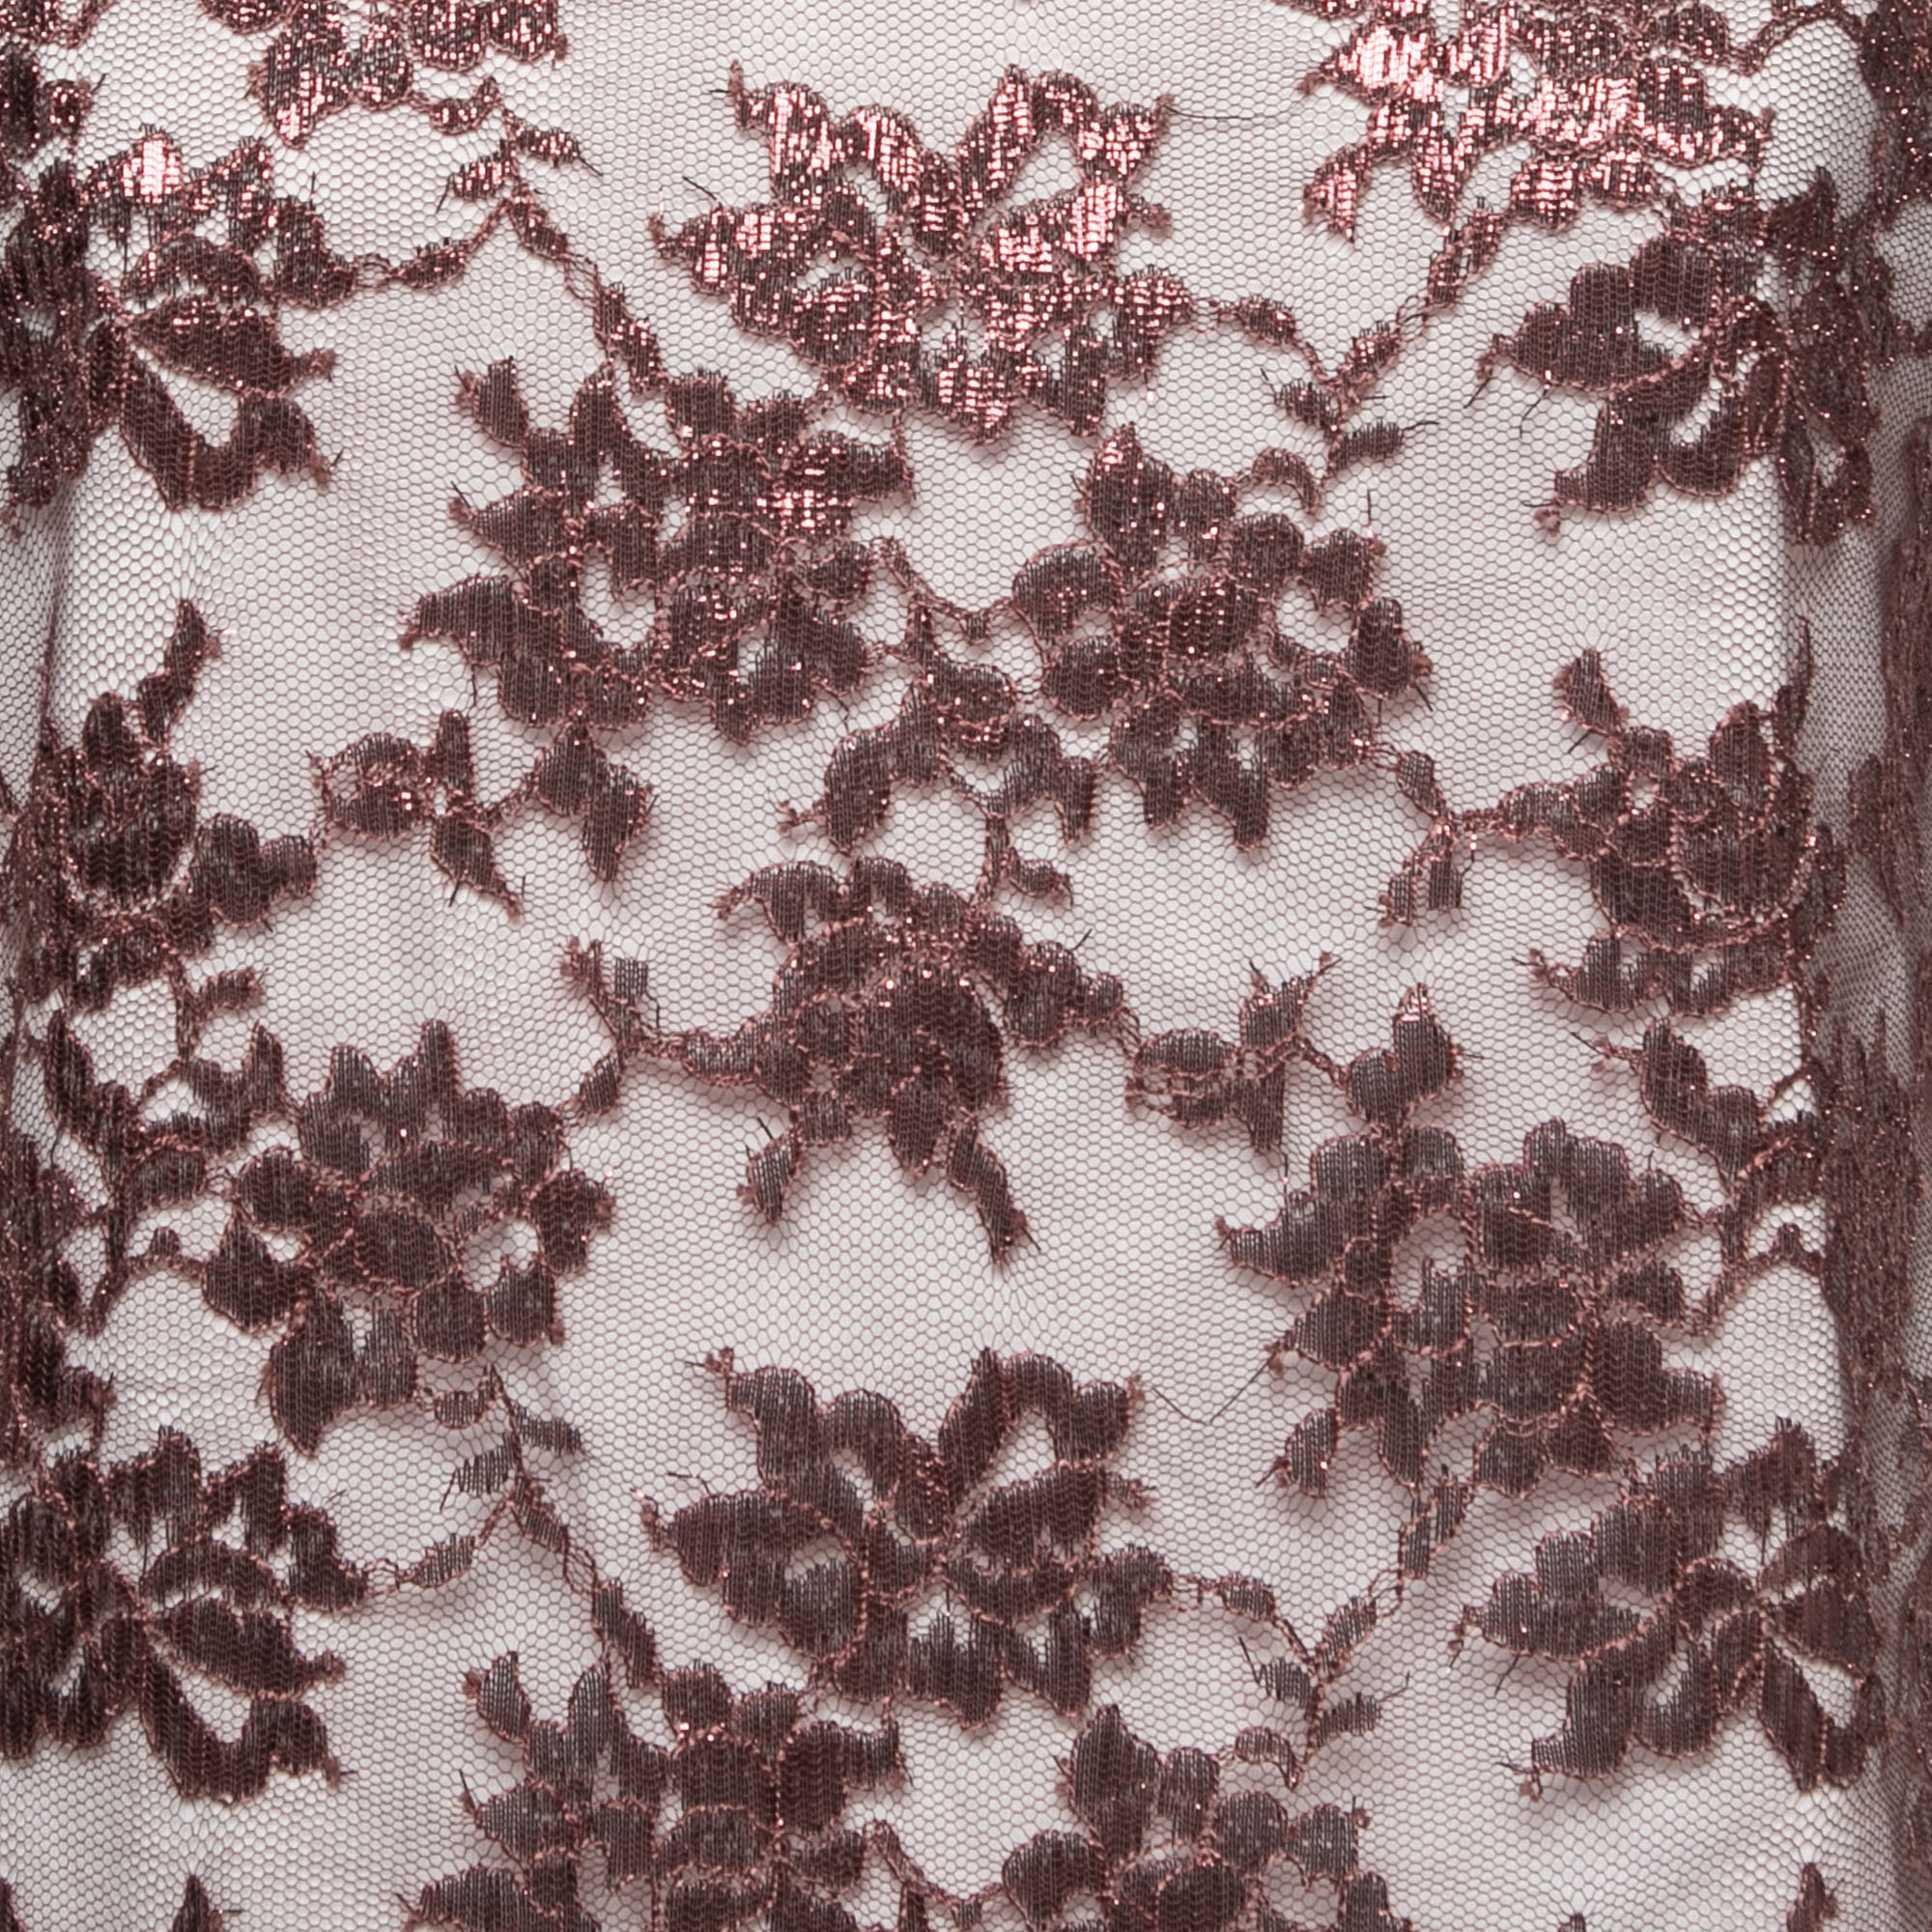 Miu Miu White Cotton Knit Lace Detail T-Shirt L